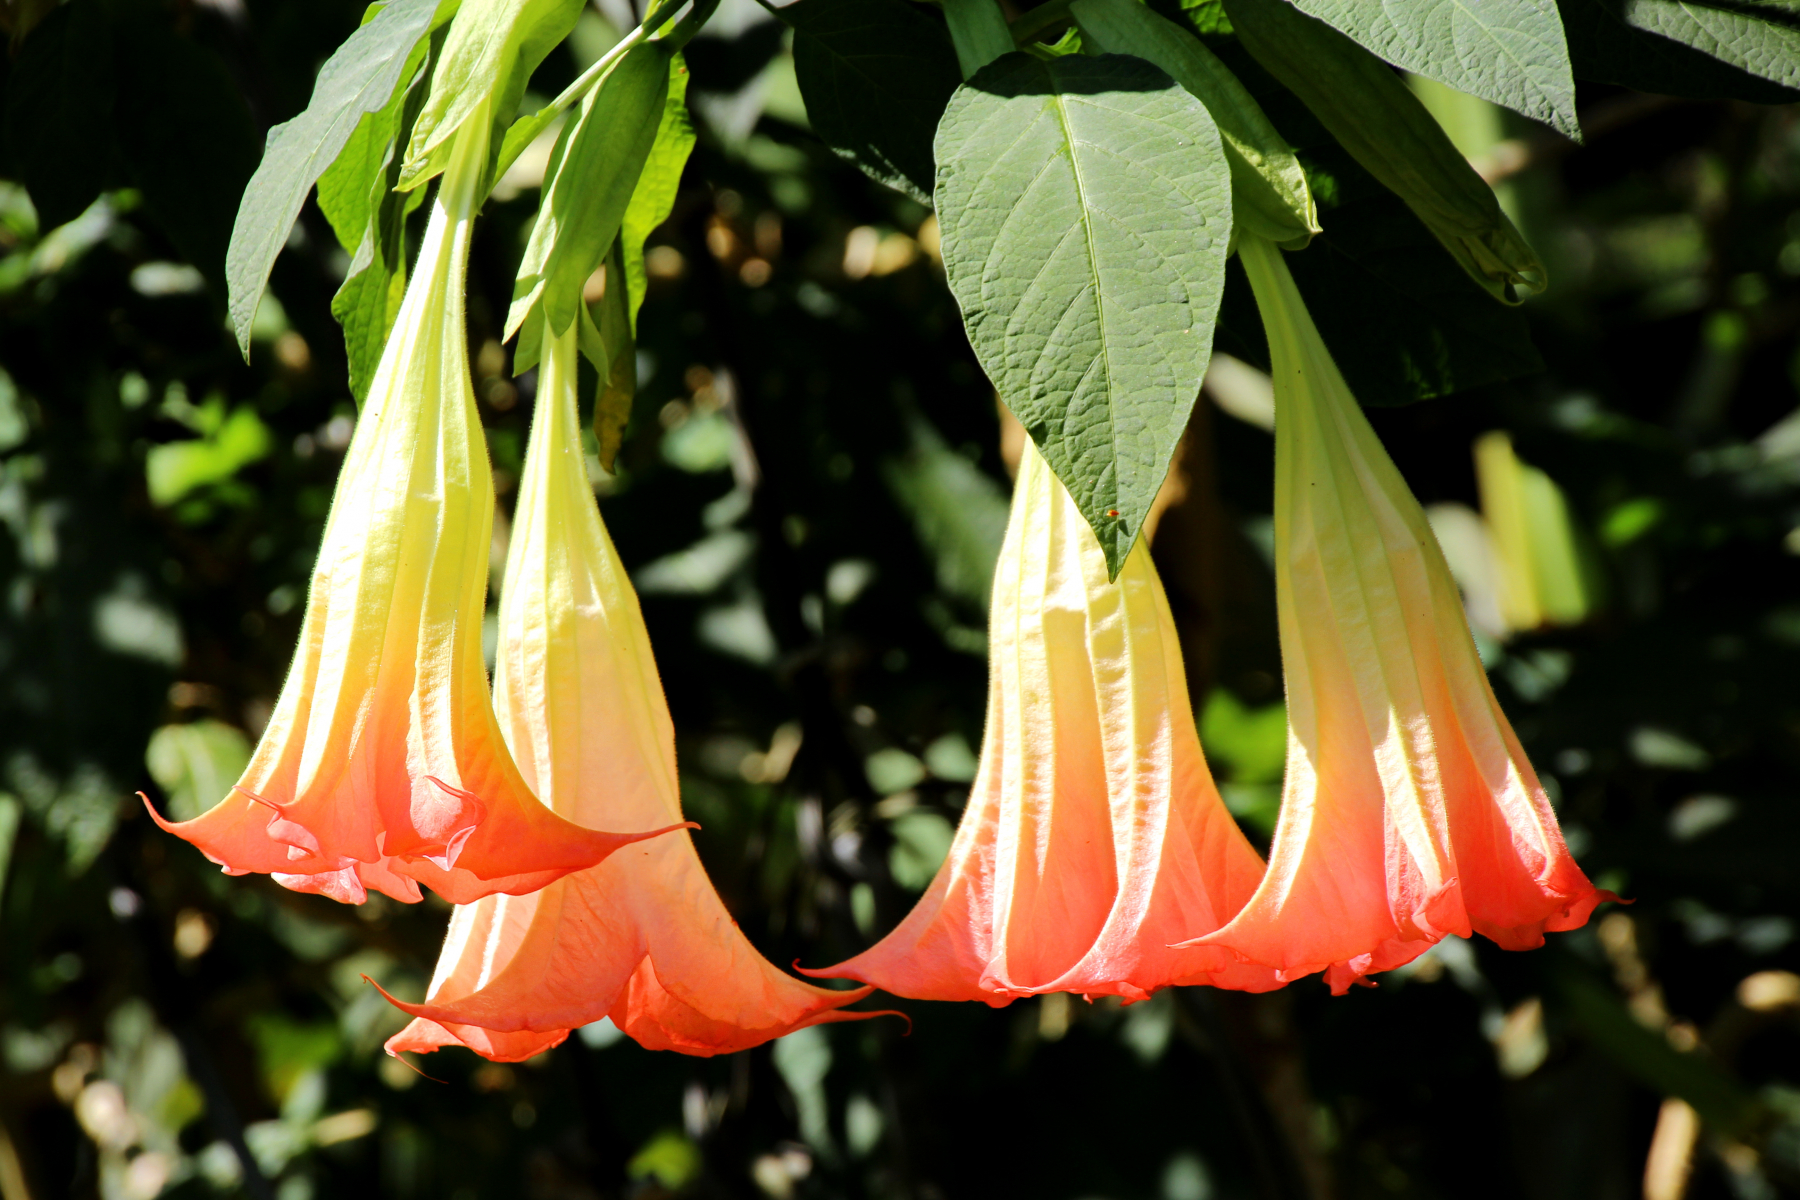 Blomstene er trompet- eller rørformet, nedover-hengende og finnes i flere fargenyanser, her vises gul og oransje farge